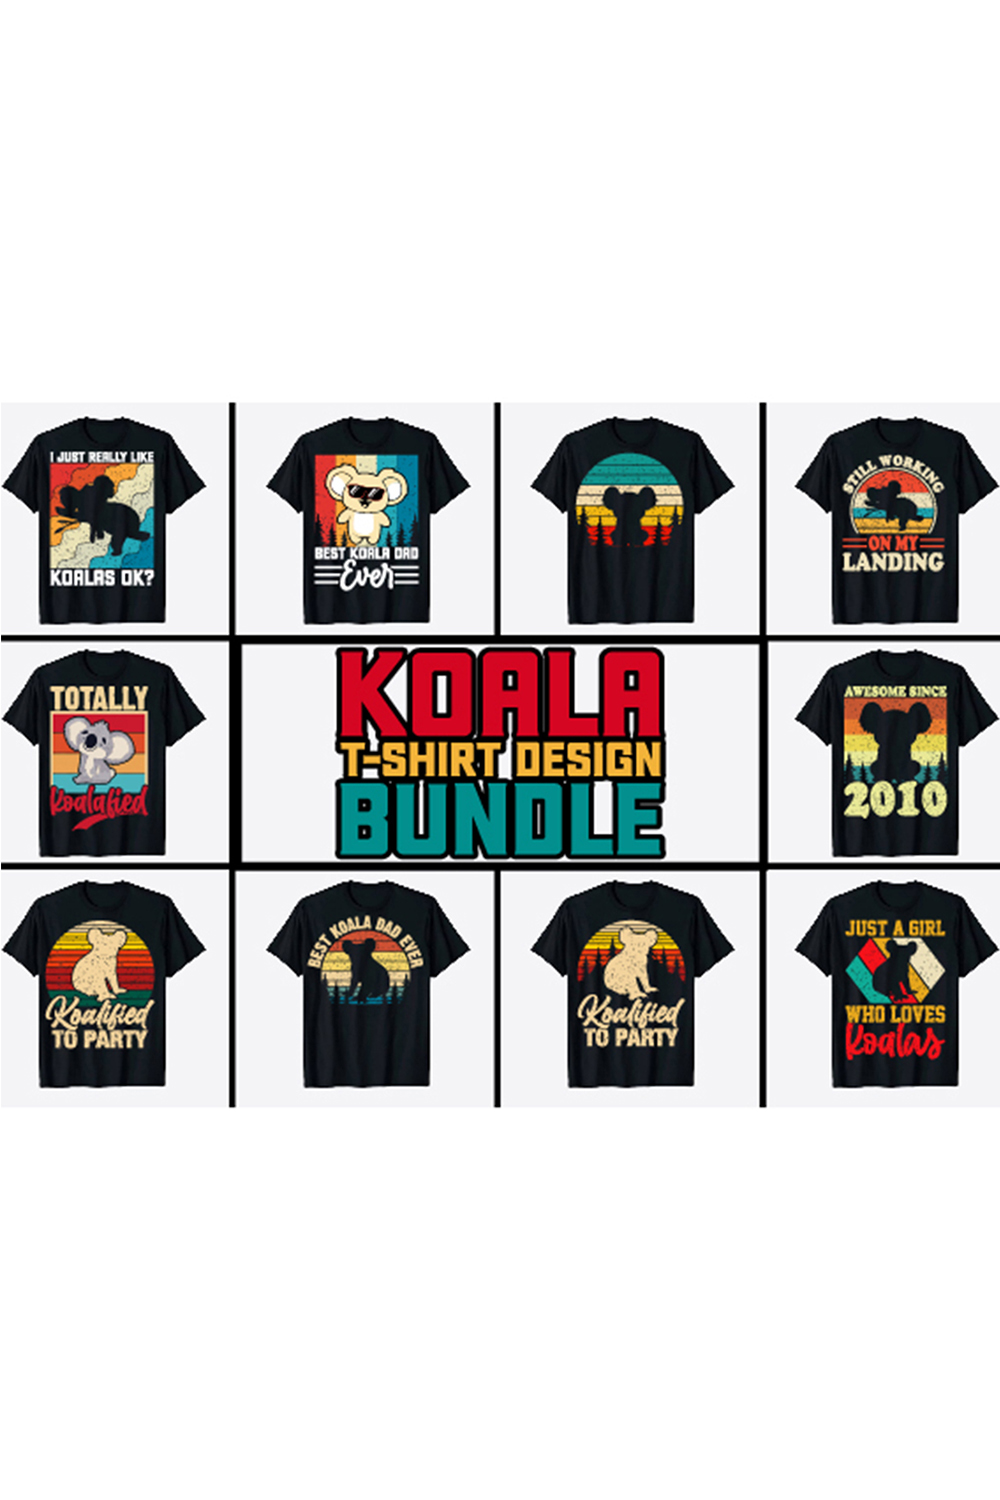 Koala T-Shirt Designs Bundle - pinterest image preview.